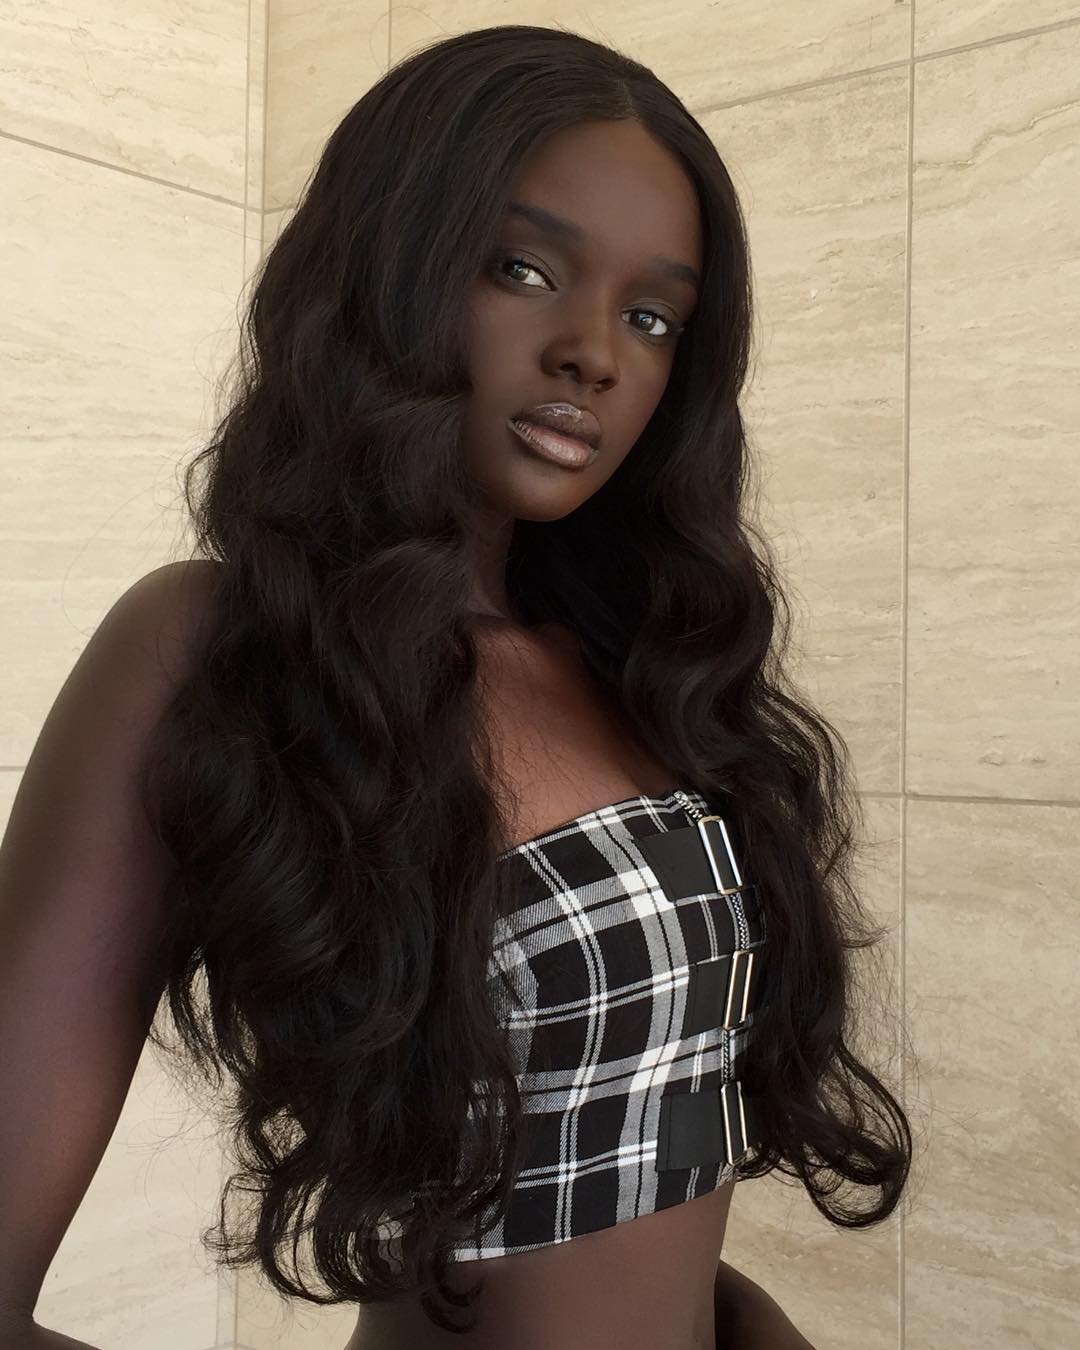 Duckie Thot Modelo Refugiada De Sudán El Nuevo Rostro De L Oréal